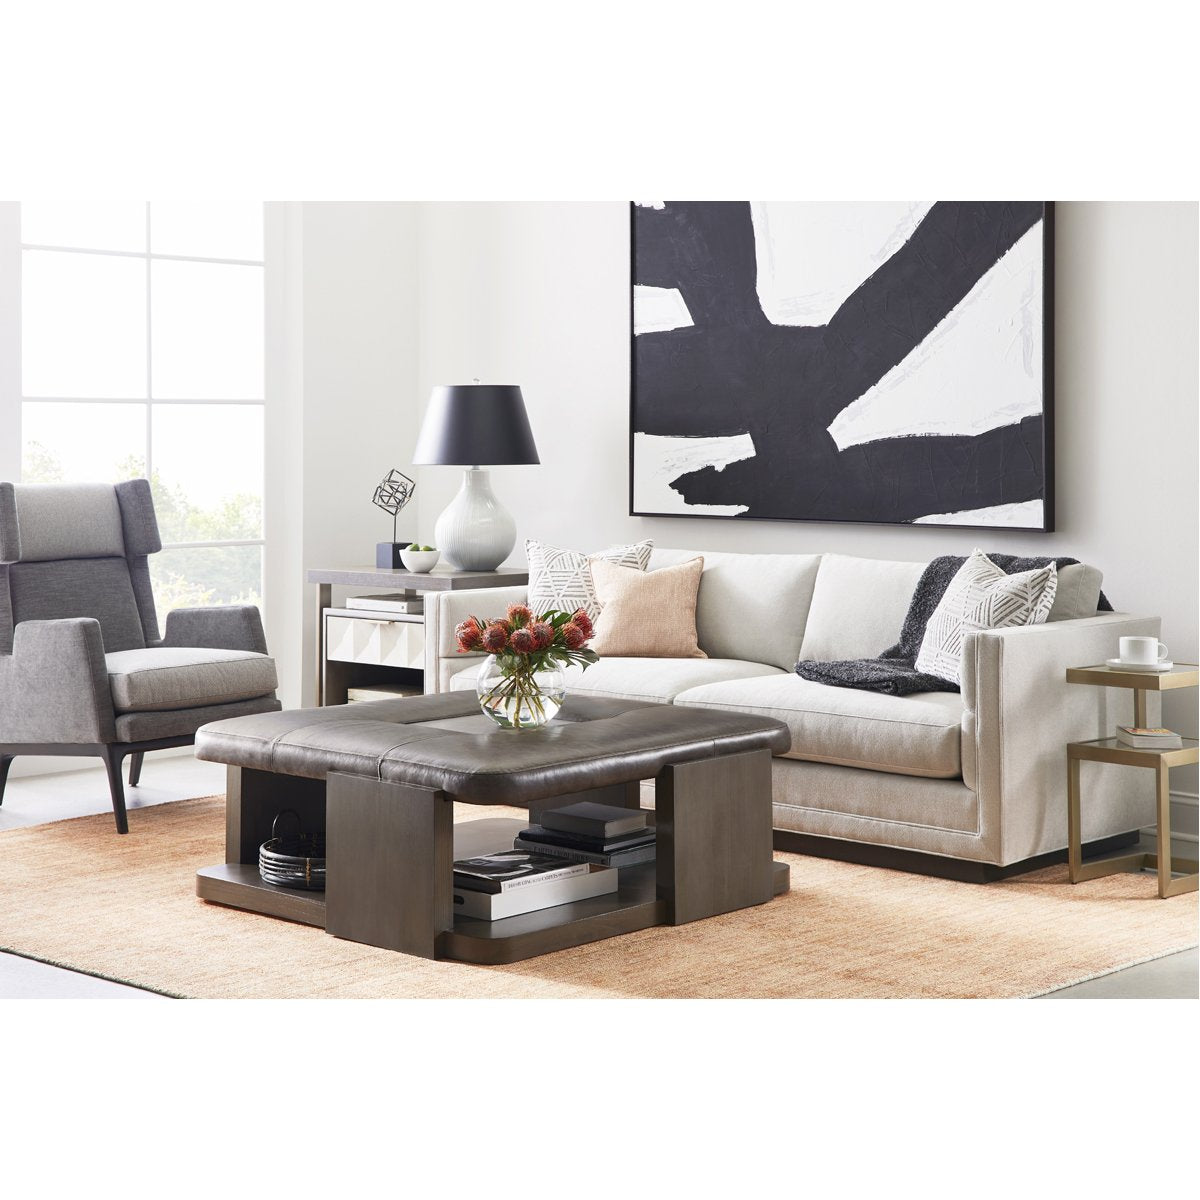 Vanguard Furniture Grantley 2-Seat Sofa